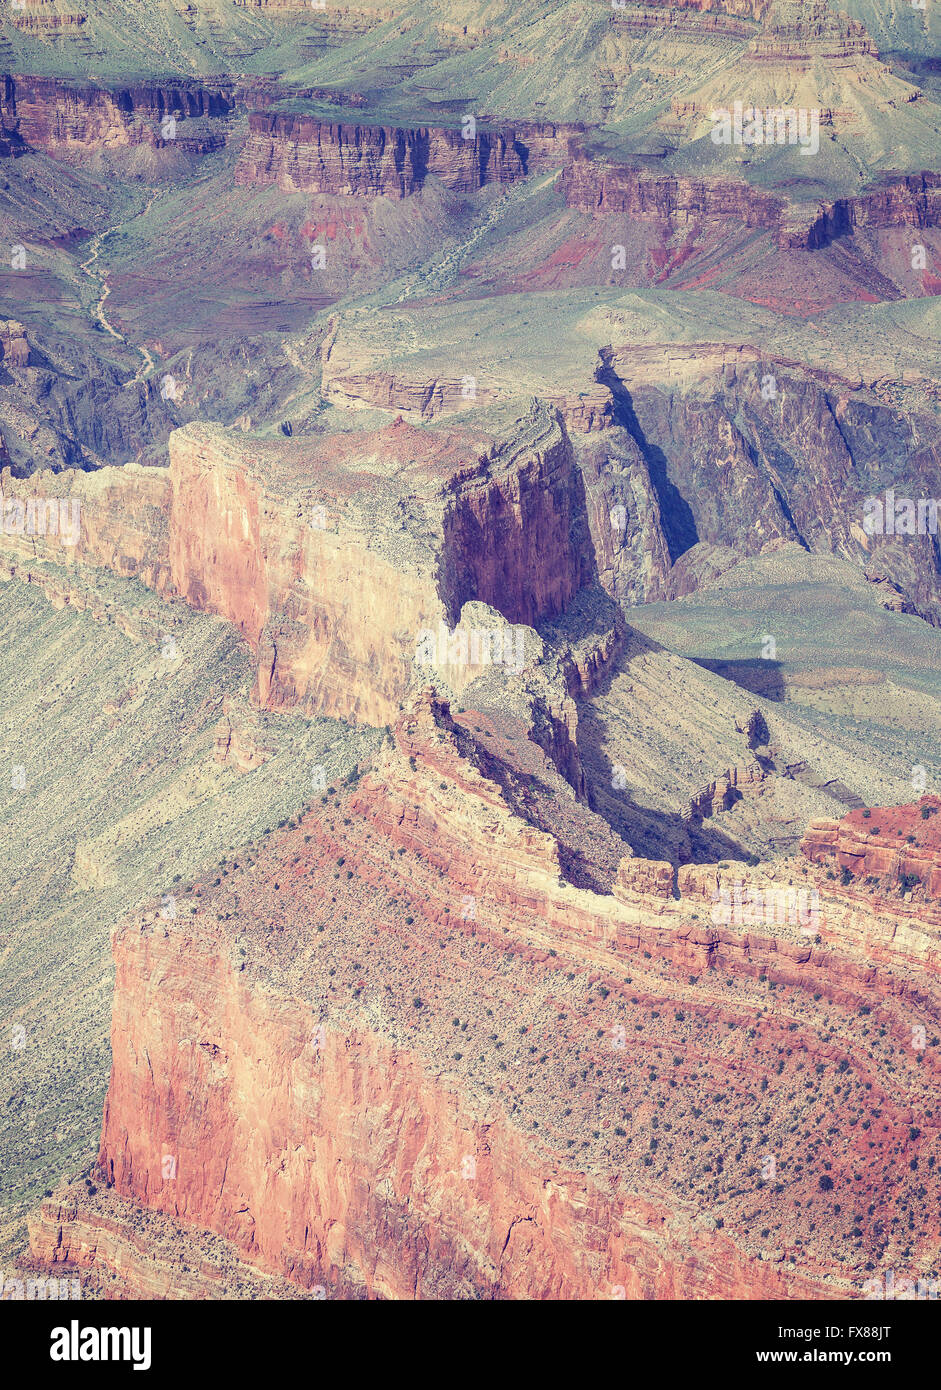 Retro getönten schließen sich Bild von Felsformationen in den Grand Canyon Nationalpark, eines der touristischen Top-Destinationen in der UNO Stockfoto